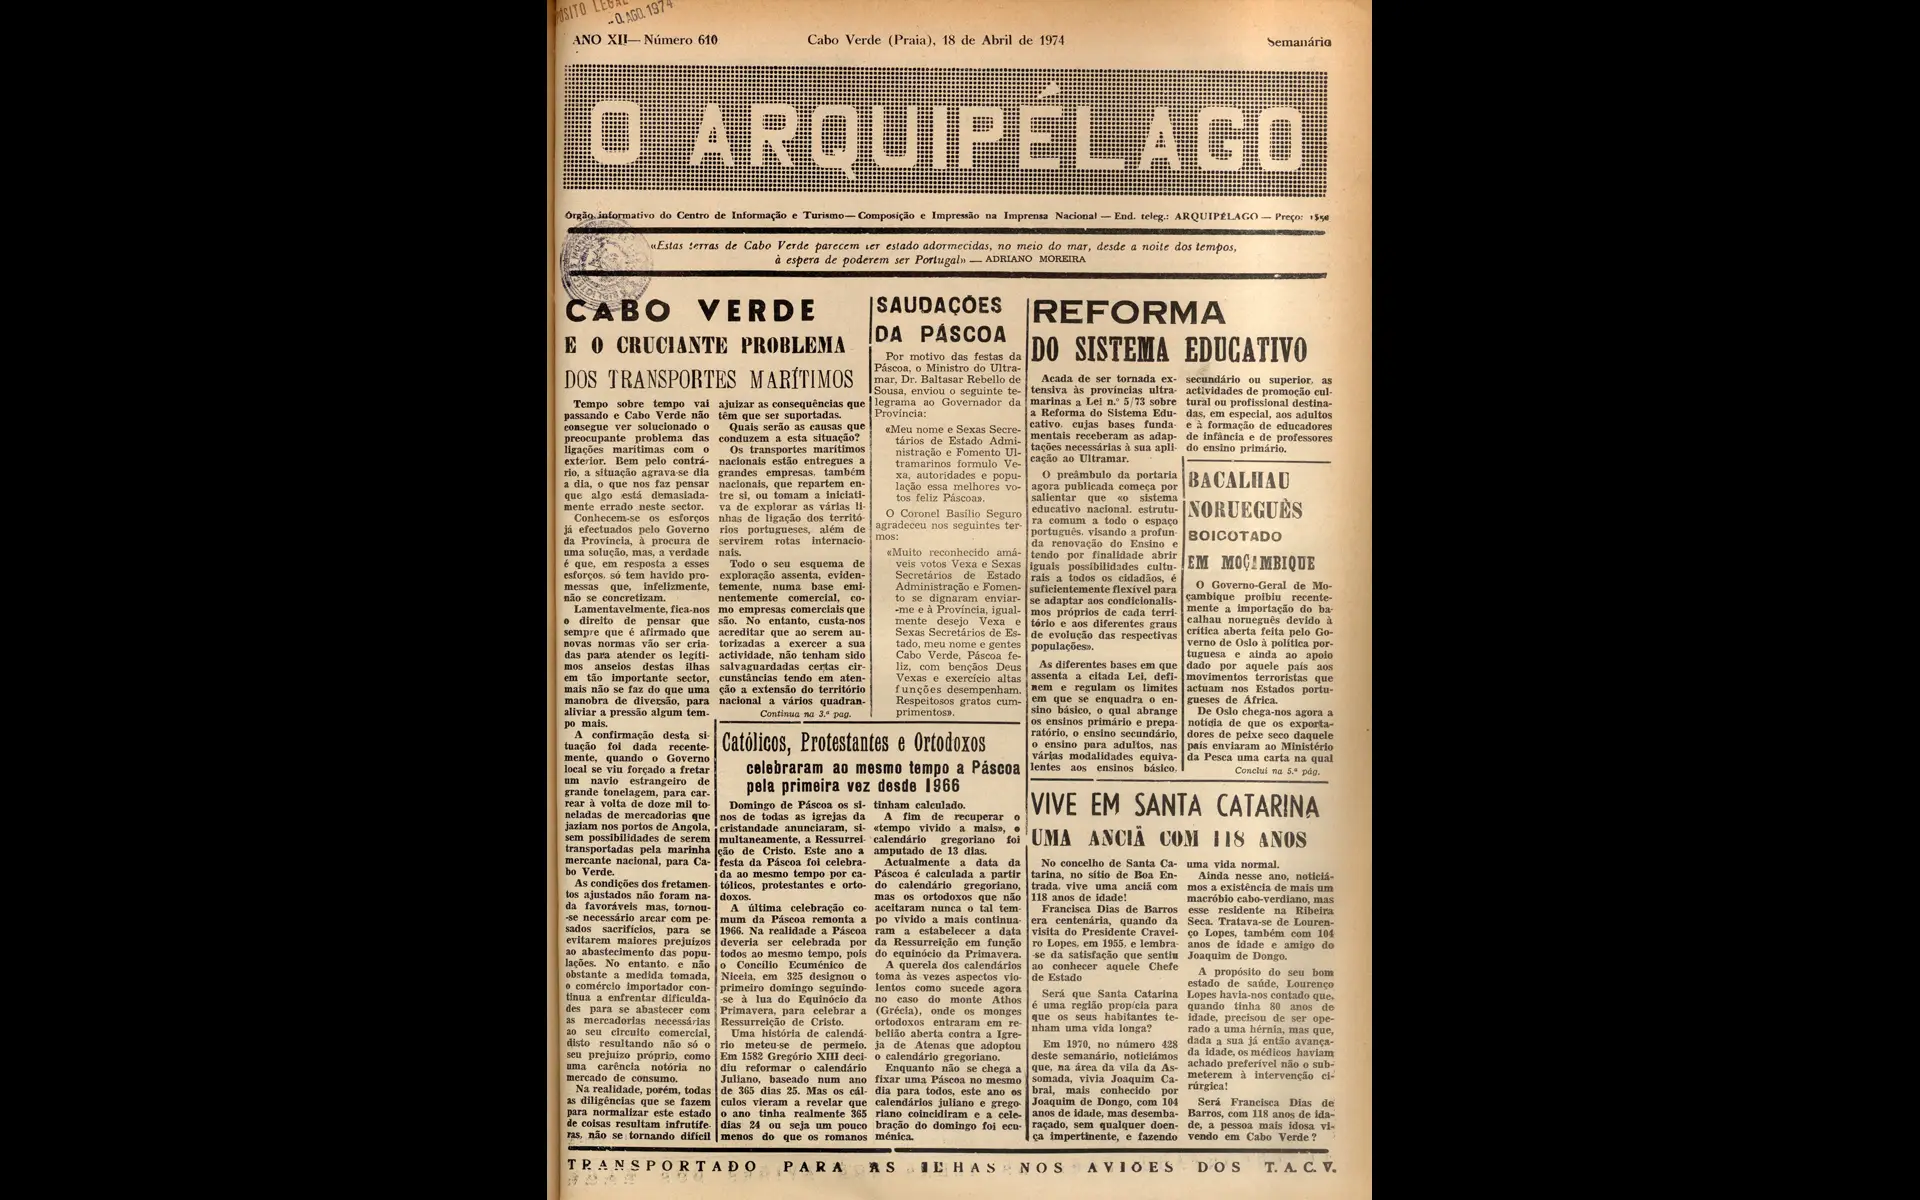 Em Cabo Verde não existiam jornais diários em 1974. A edição de 18 de abril do semanário “O Arquipélago”, publicado na cidade da Praia, não tem fotos na primeira página e fala sobre o problema das comunicações marítimas em Cabo Verde